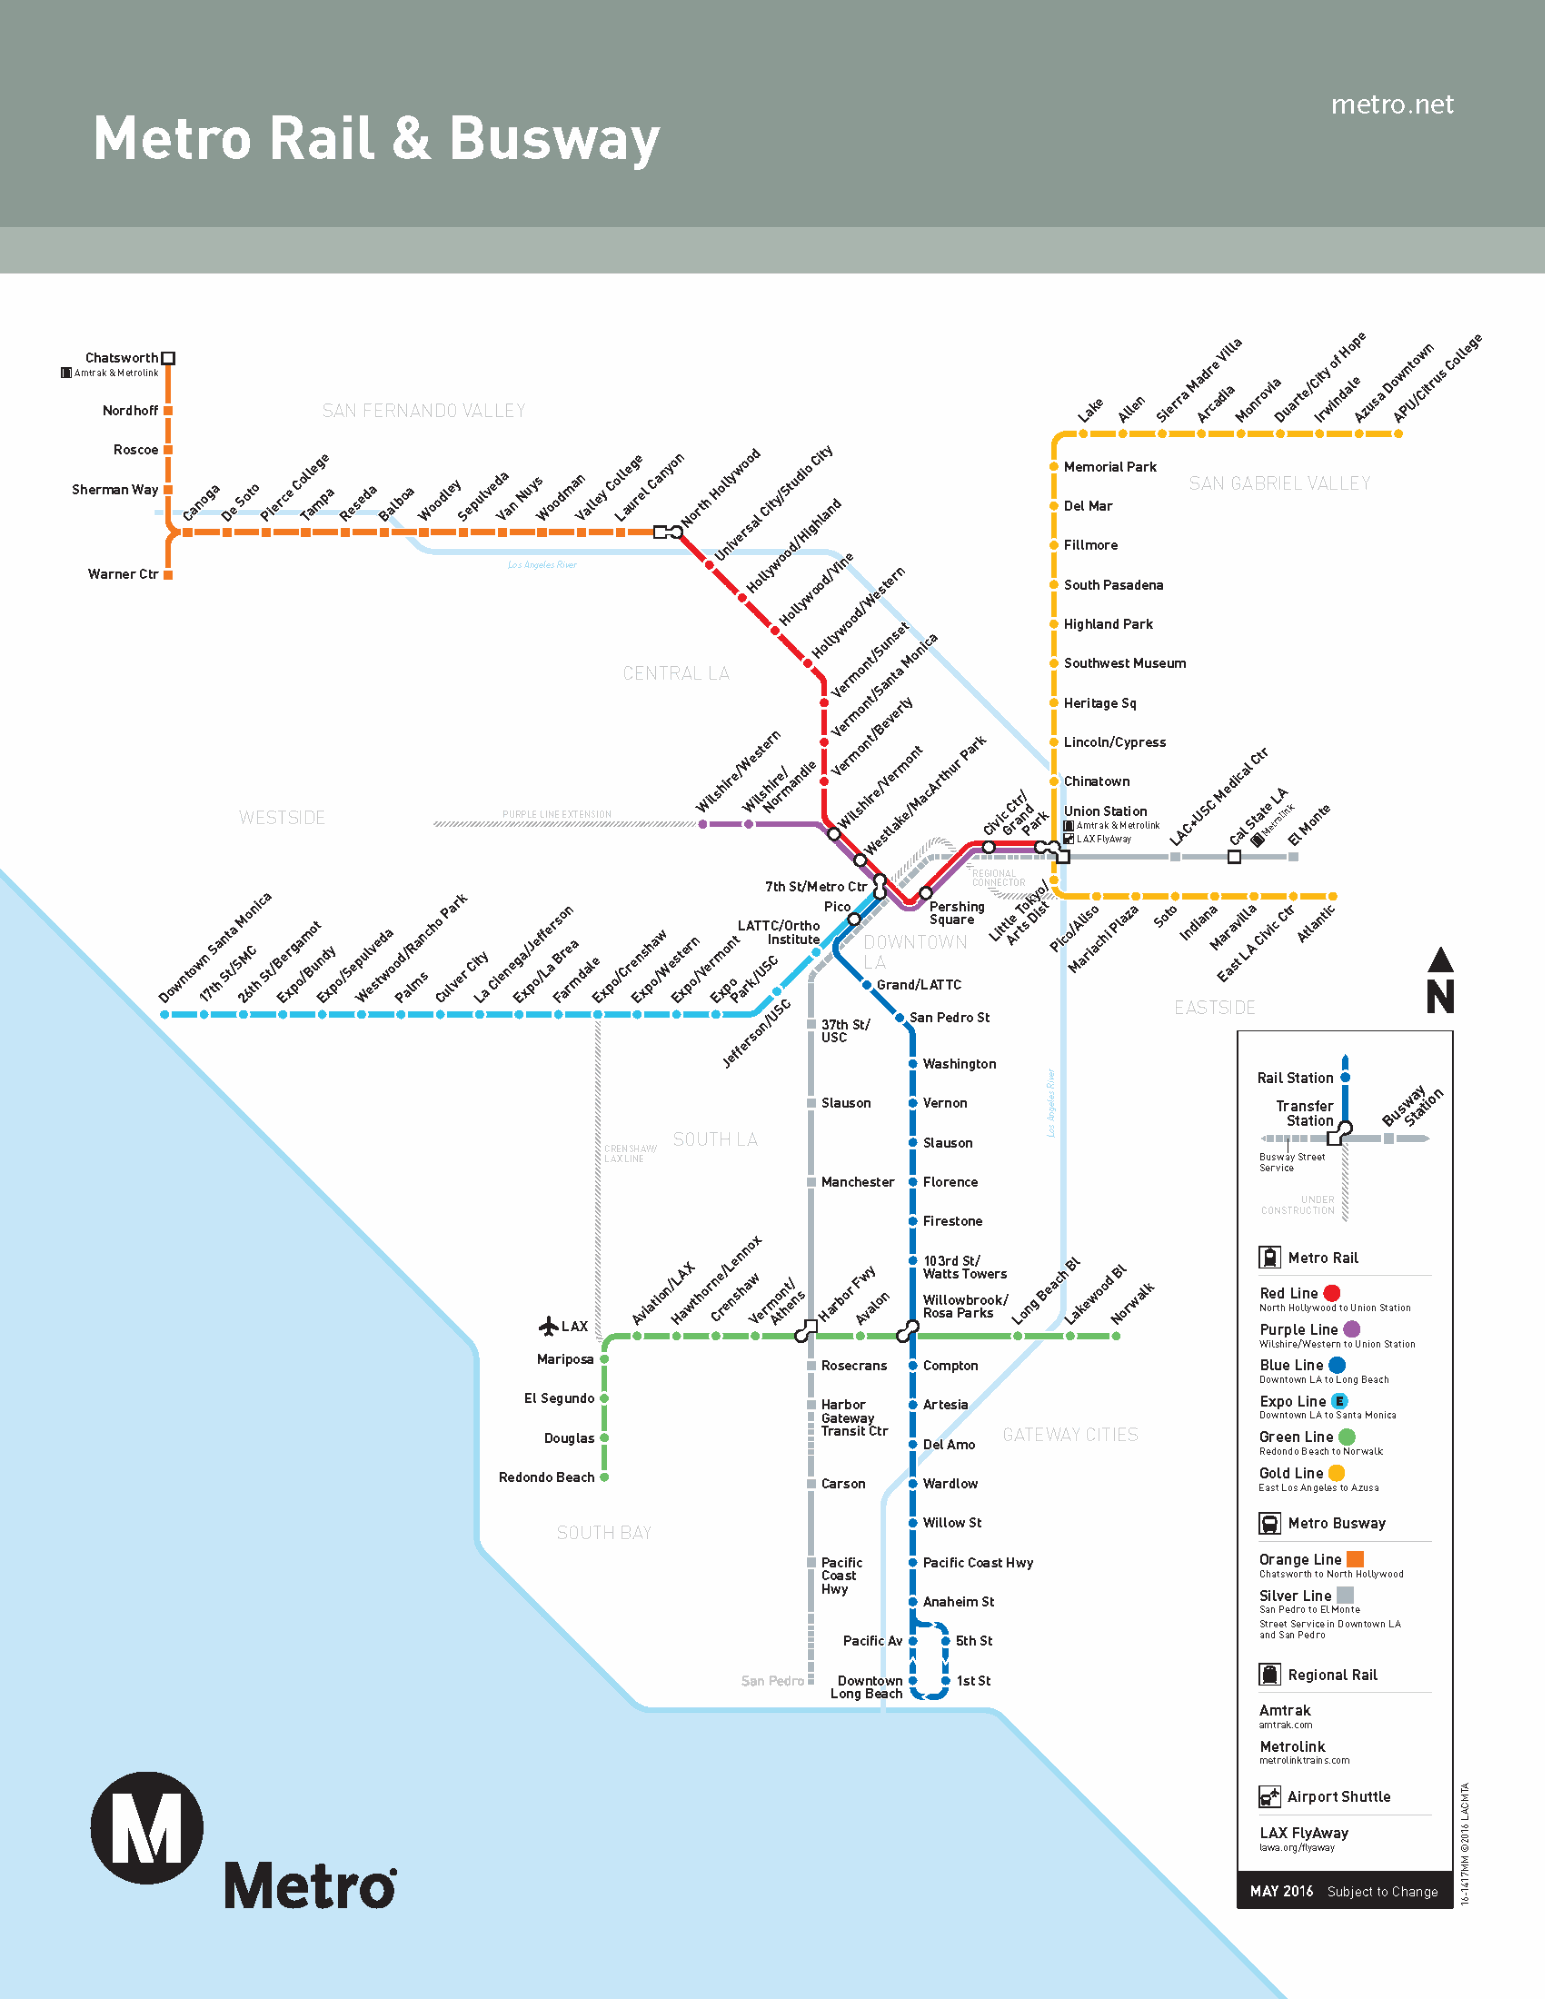 ロサンゼルスの電車 地下鉄乗り方ガイド 路線図 料金 時刻表 治安 ロコタビ